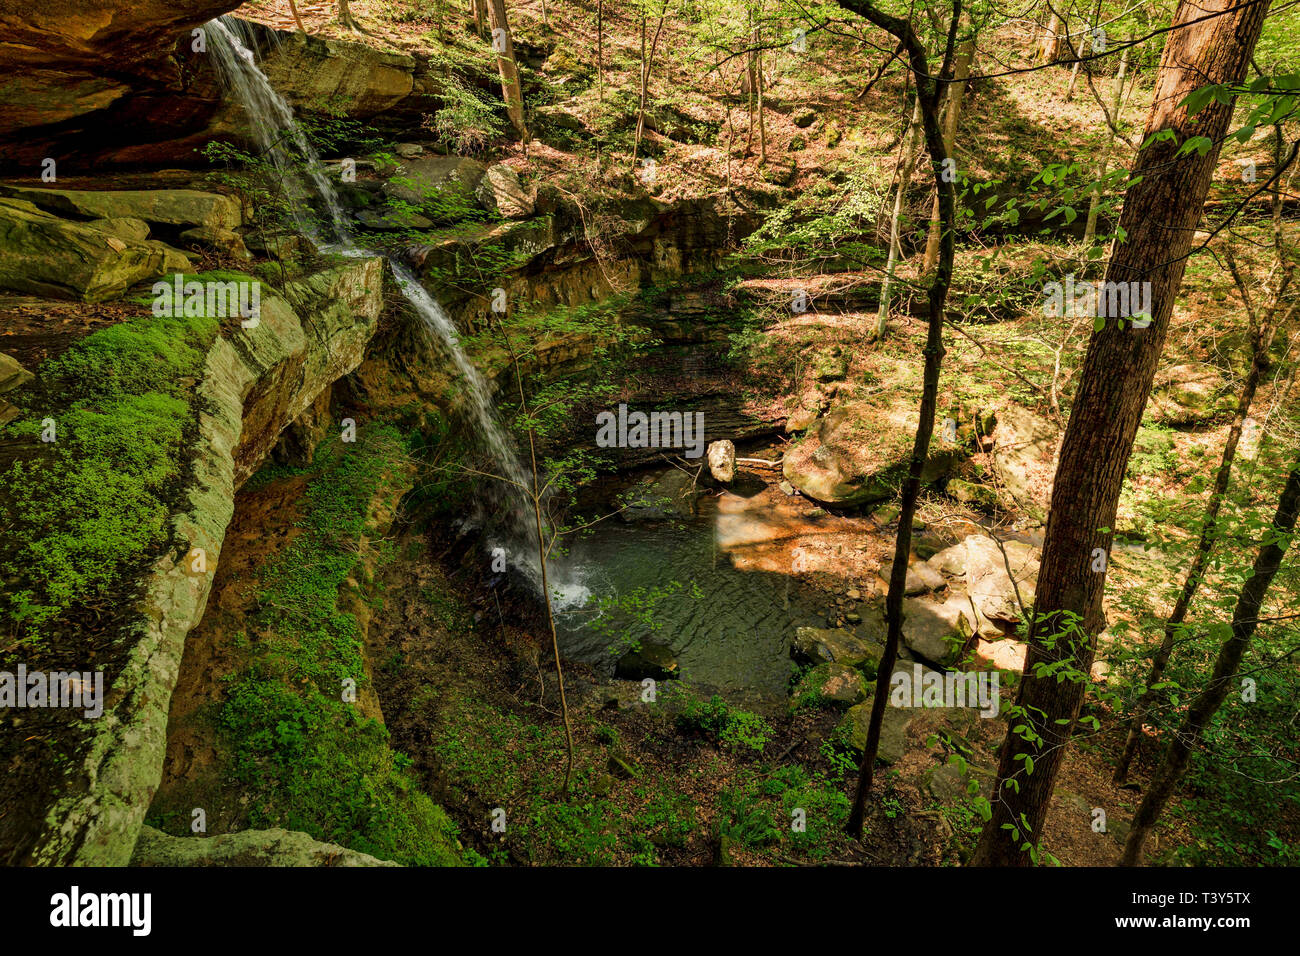 La prima goccia di canna Creek Waterfall è breve rispetto a quello che lo segue. Non vi è spazio sufficiente per una persona a mettersi dietro le cascate. Foto Stock